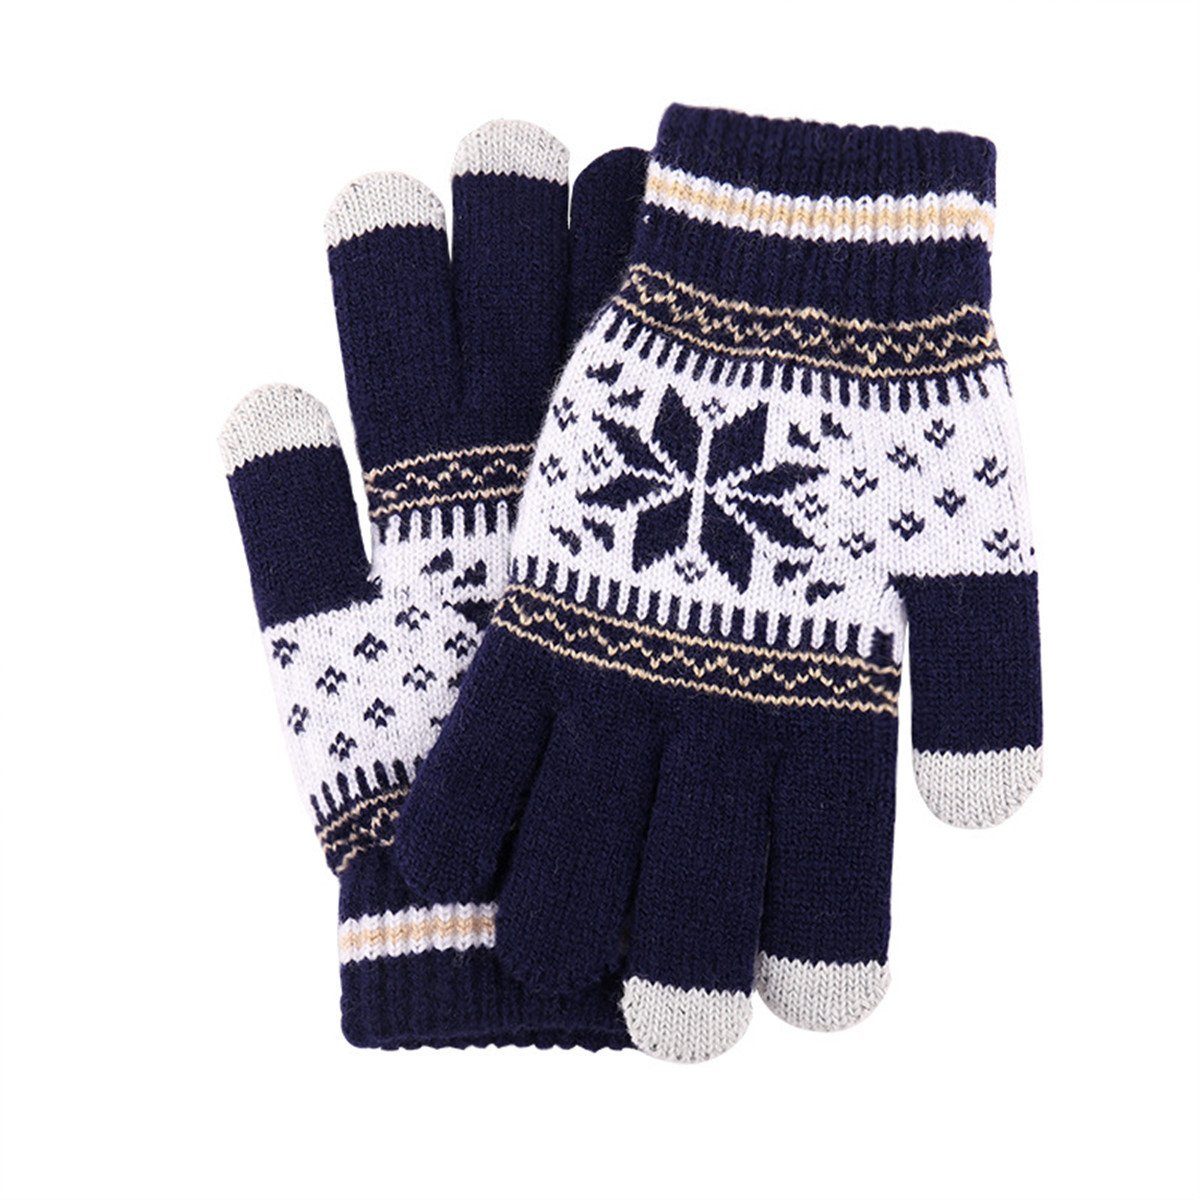 Die Sterne Strickhandschuhe Schneeflocken-Druck, warm für Männer und Frauen beim Skifahren Navy blau